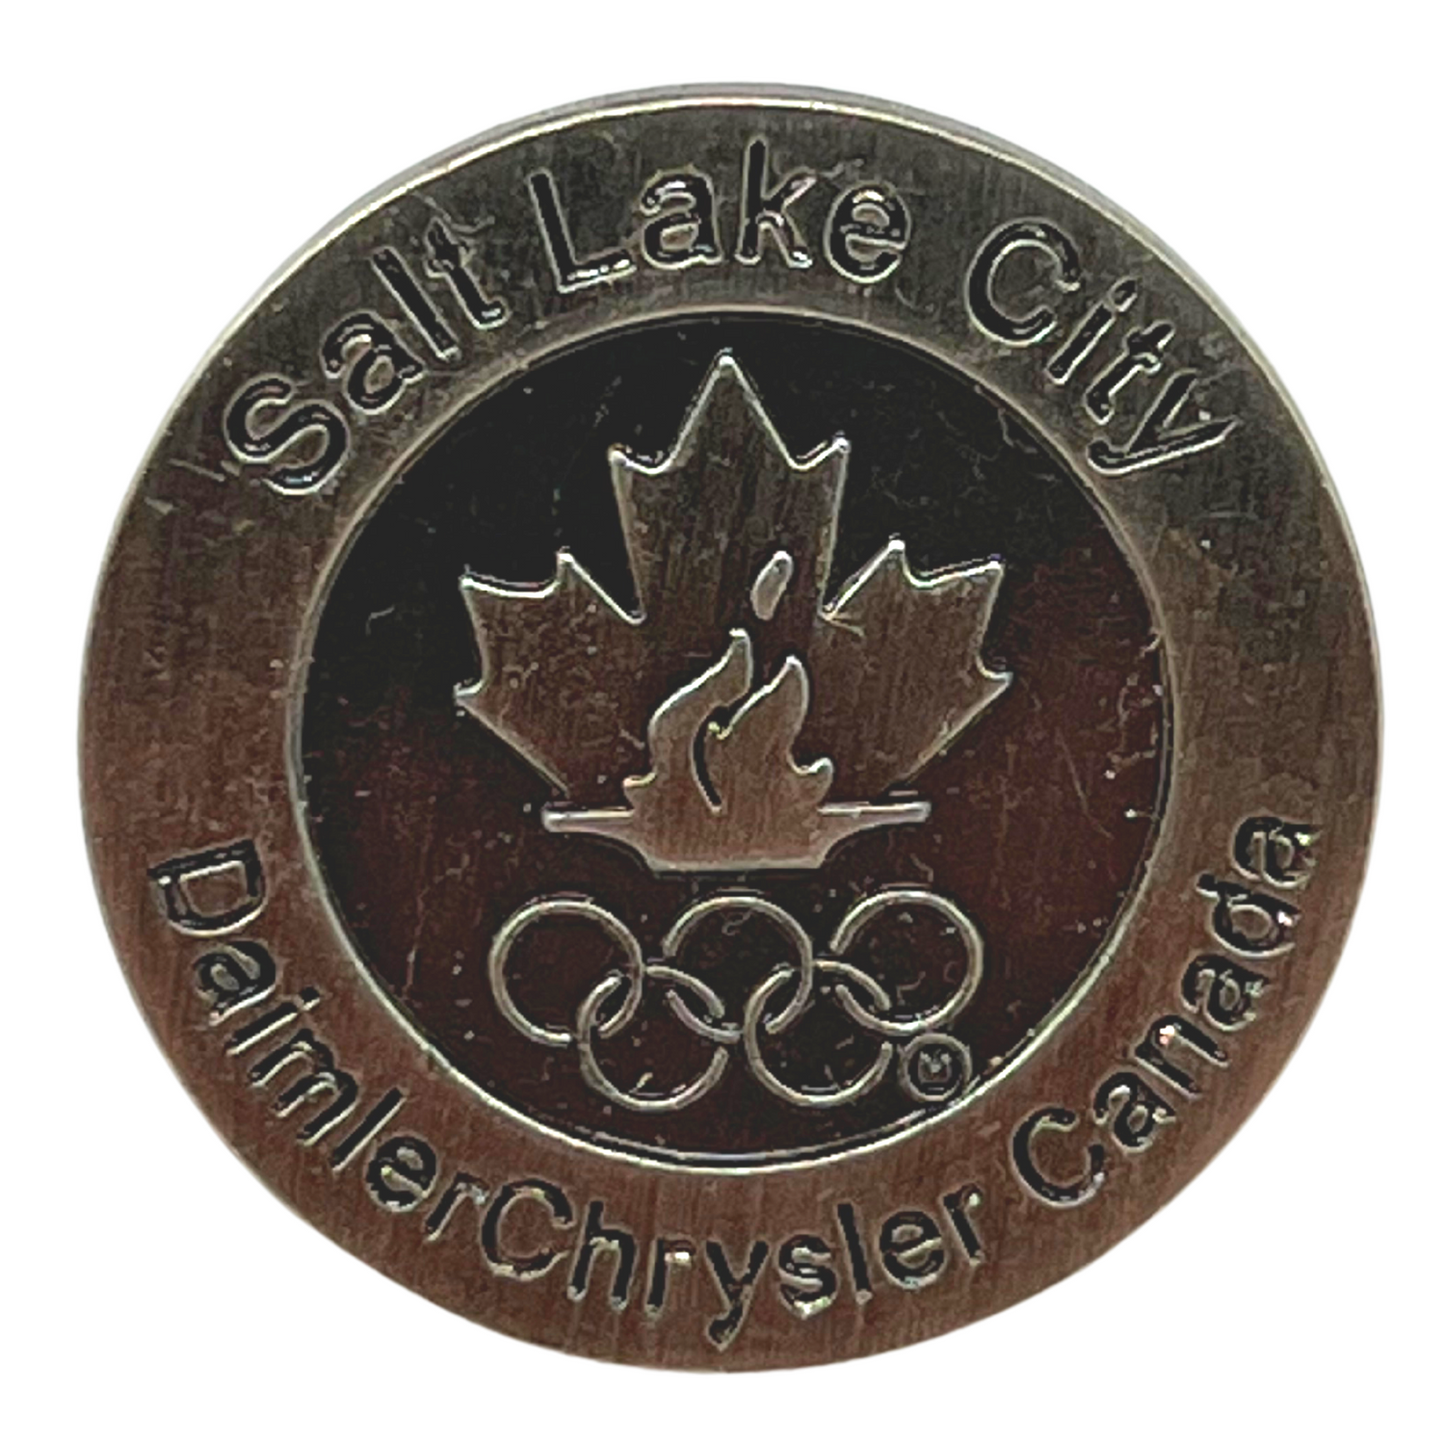 Salt Lake City 2002 Daimler-Chrysler Canada Olympics Lapel Pin